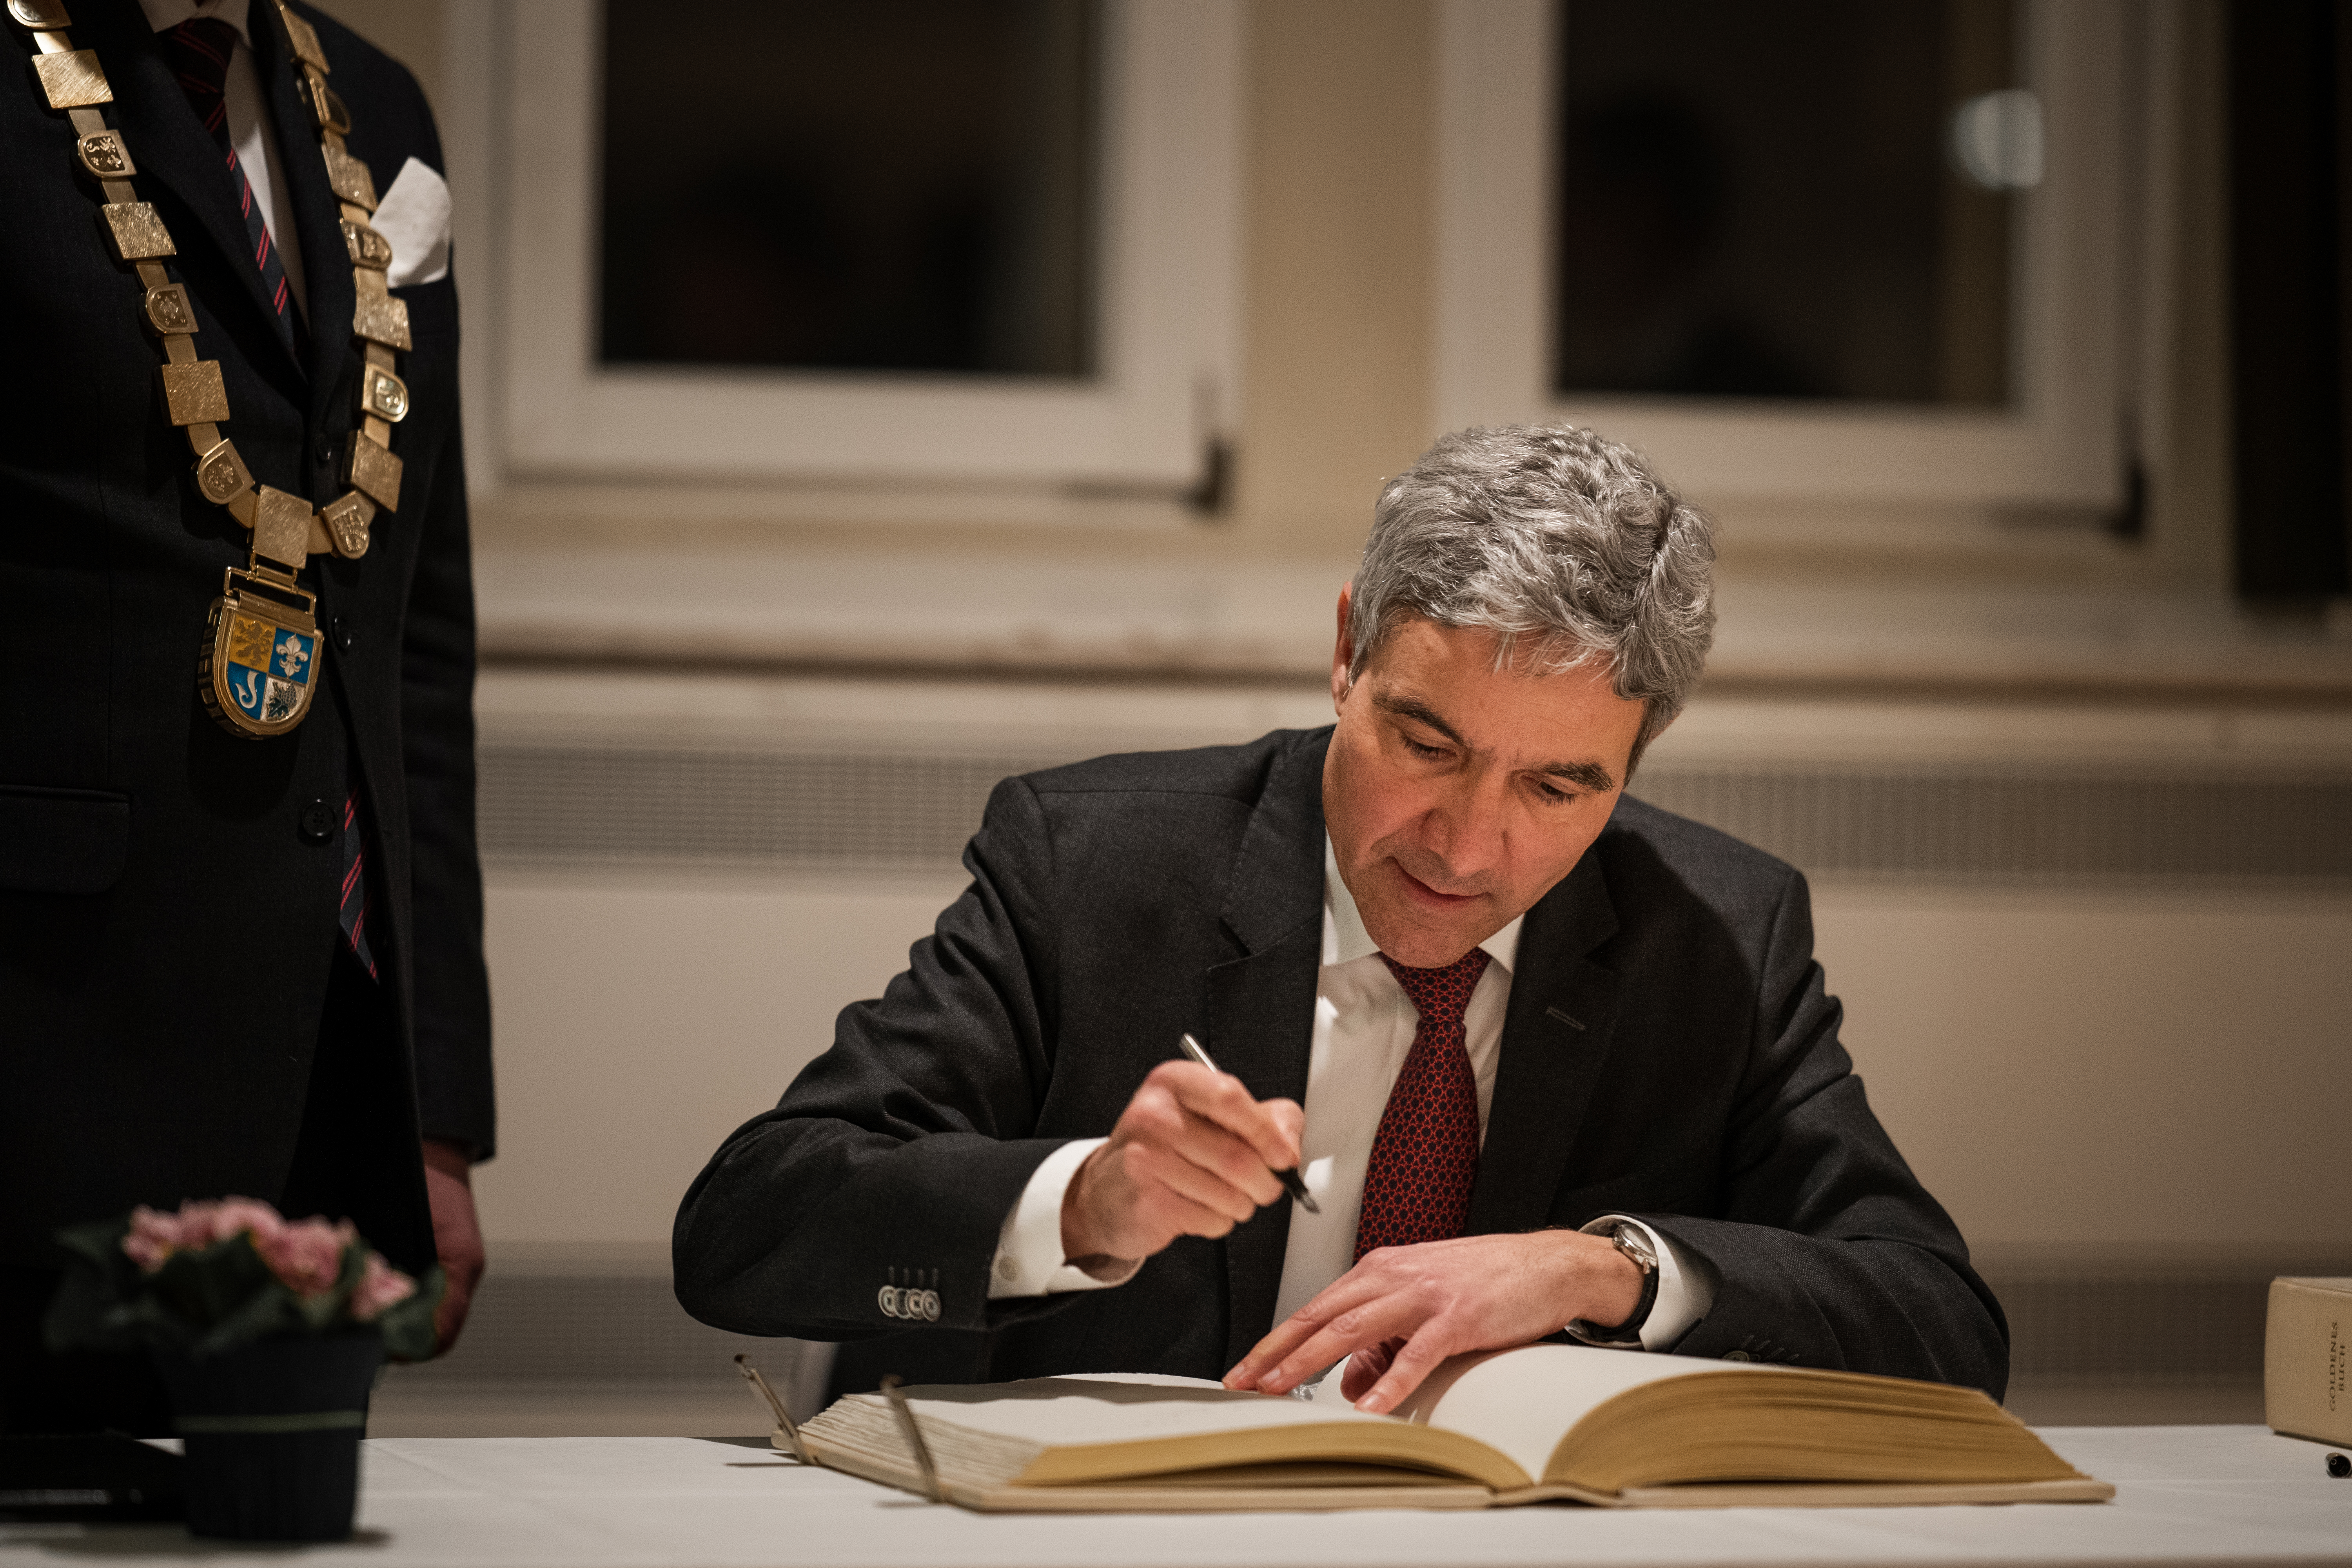  Herr Dr. Stephan Harbarth bei der Unterzeichnung des Goldenen Buches der Stadt Leimen 